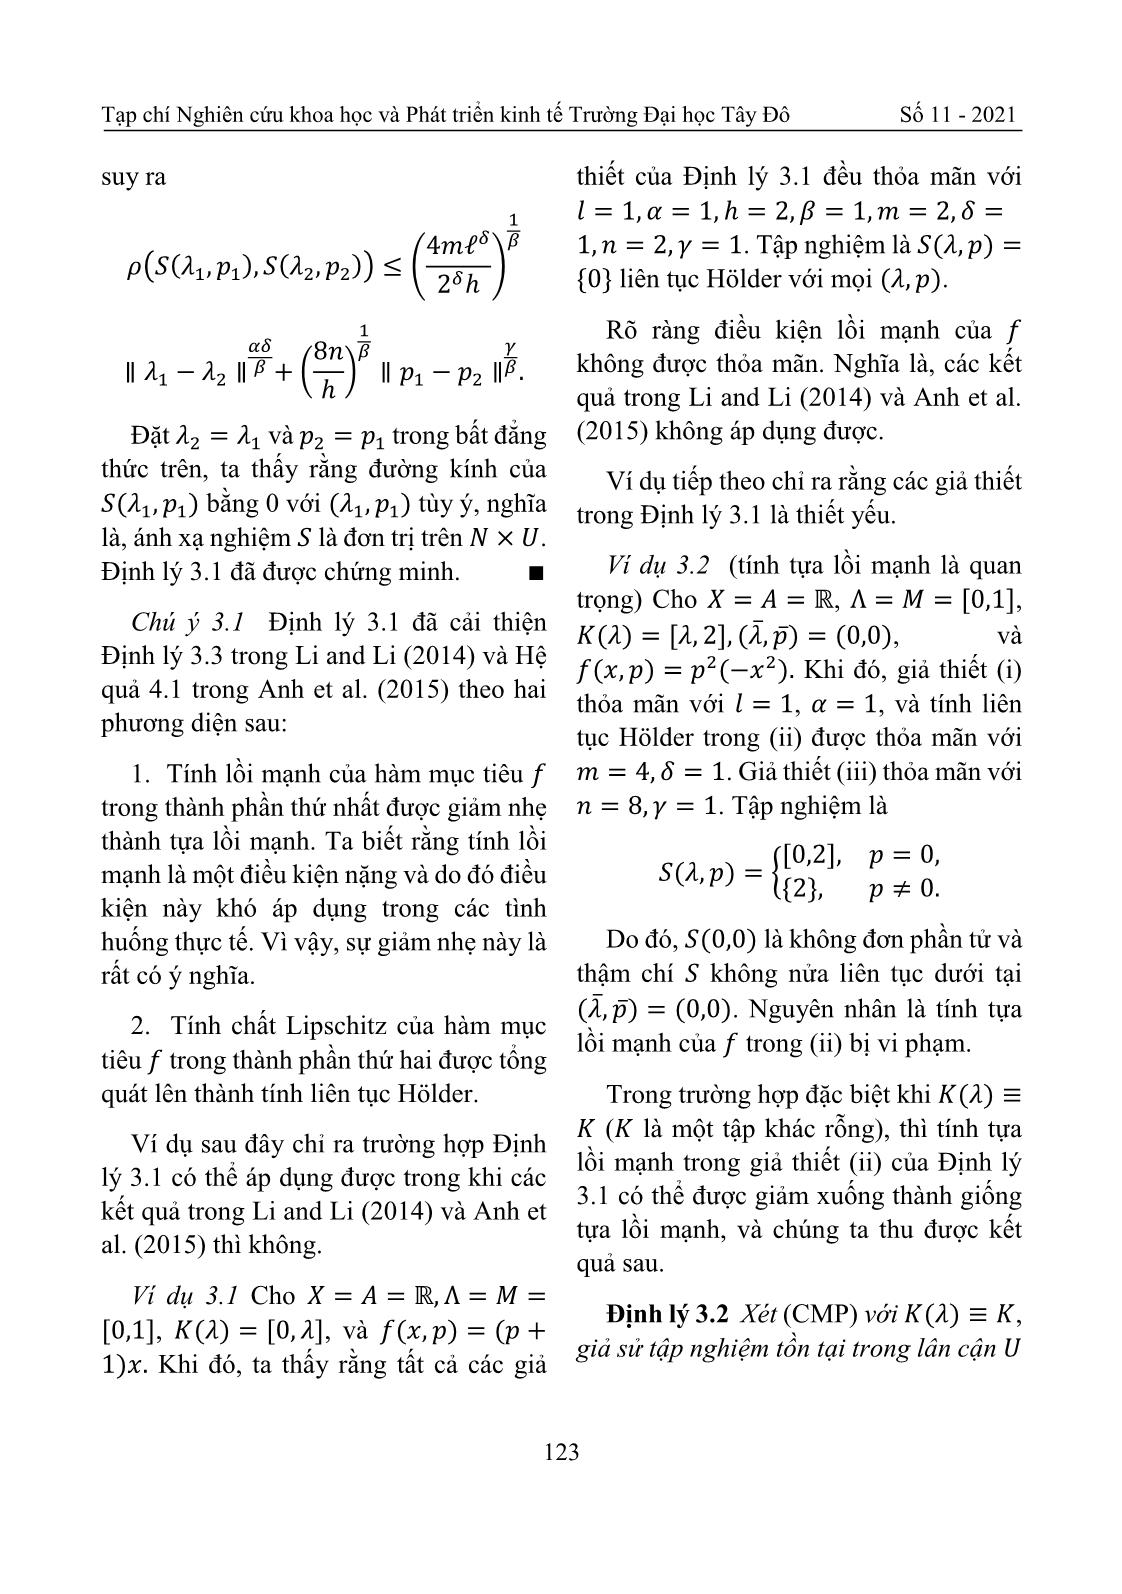 Tính liên tục Holder của ánh xạ nghiệm bài toán cực tiểu hóa có điều kiện trang 7